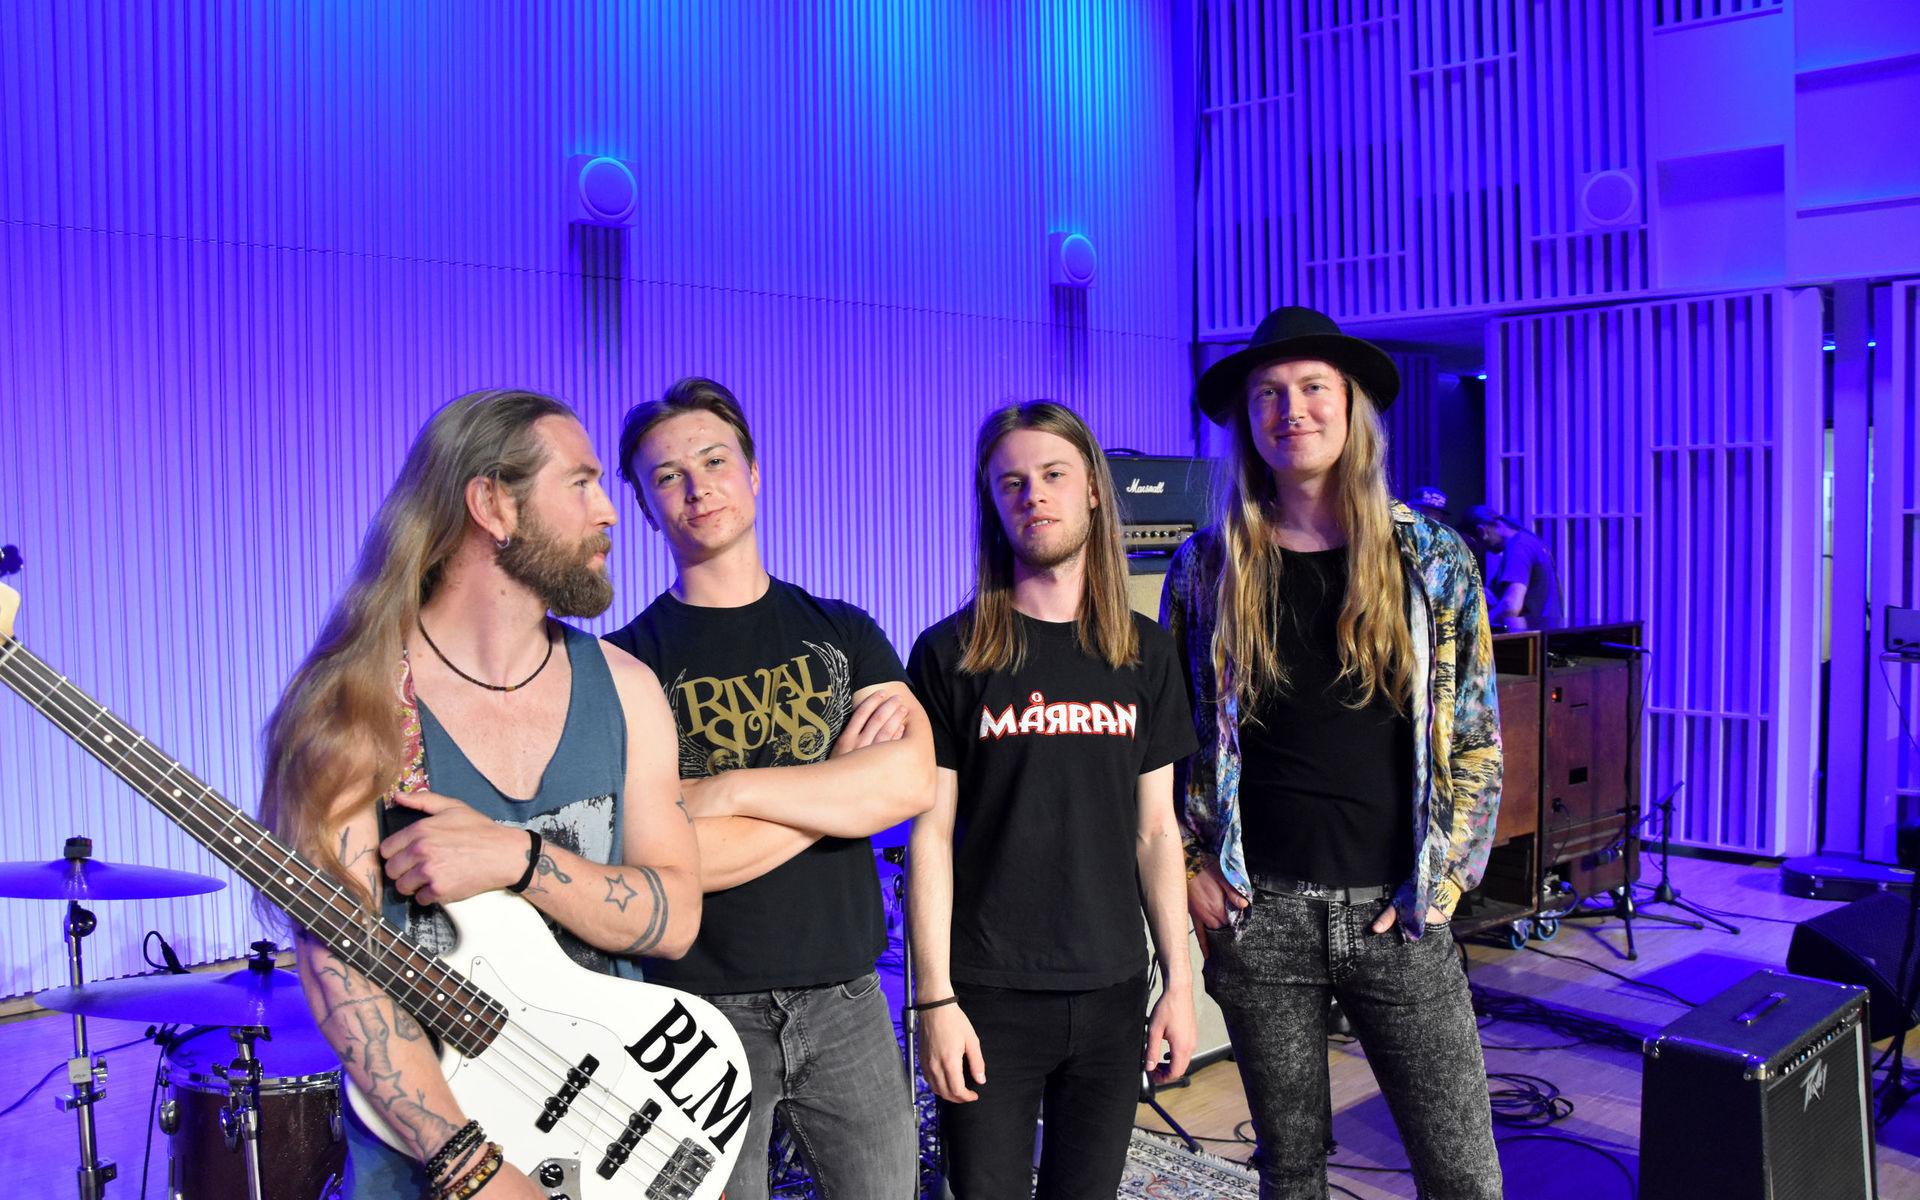 Halmstadbandet Honeyburst kommer att spela på Sweden rock festival i Sölvesborg sommaren 2022.